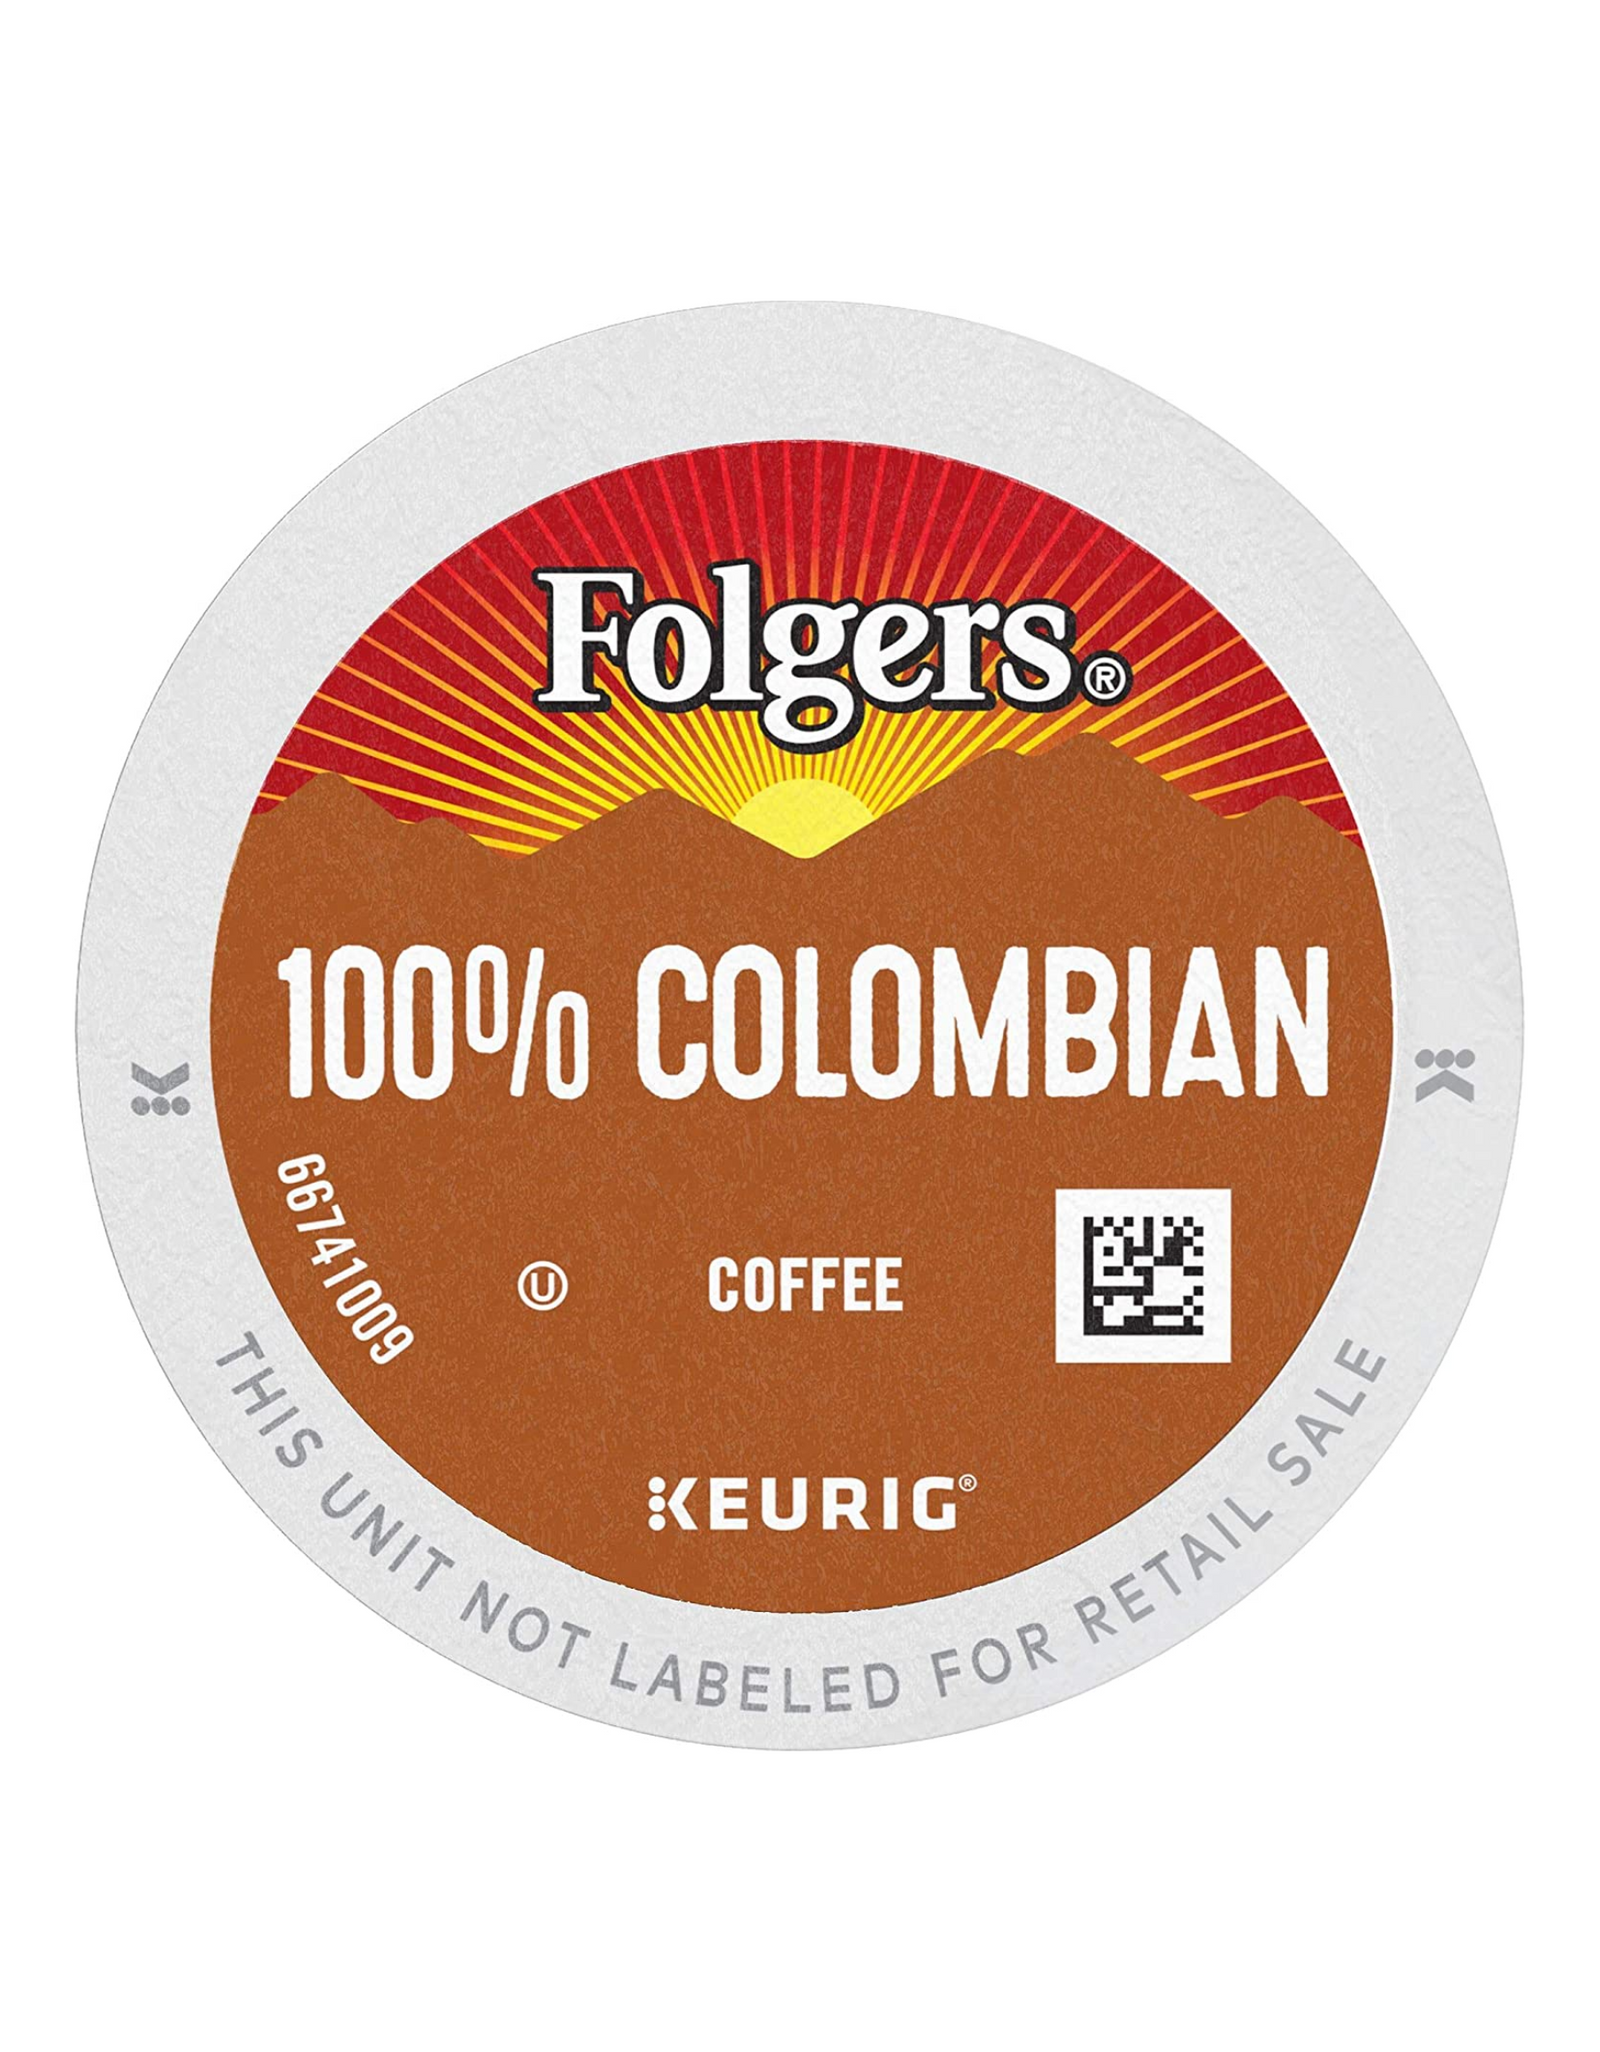 Folgers 100% Colombian Medium Roast Coffee, 96 Keurig K-Cup Pods